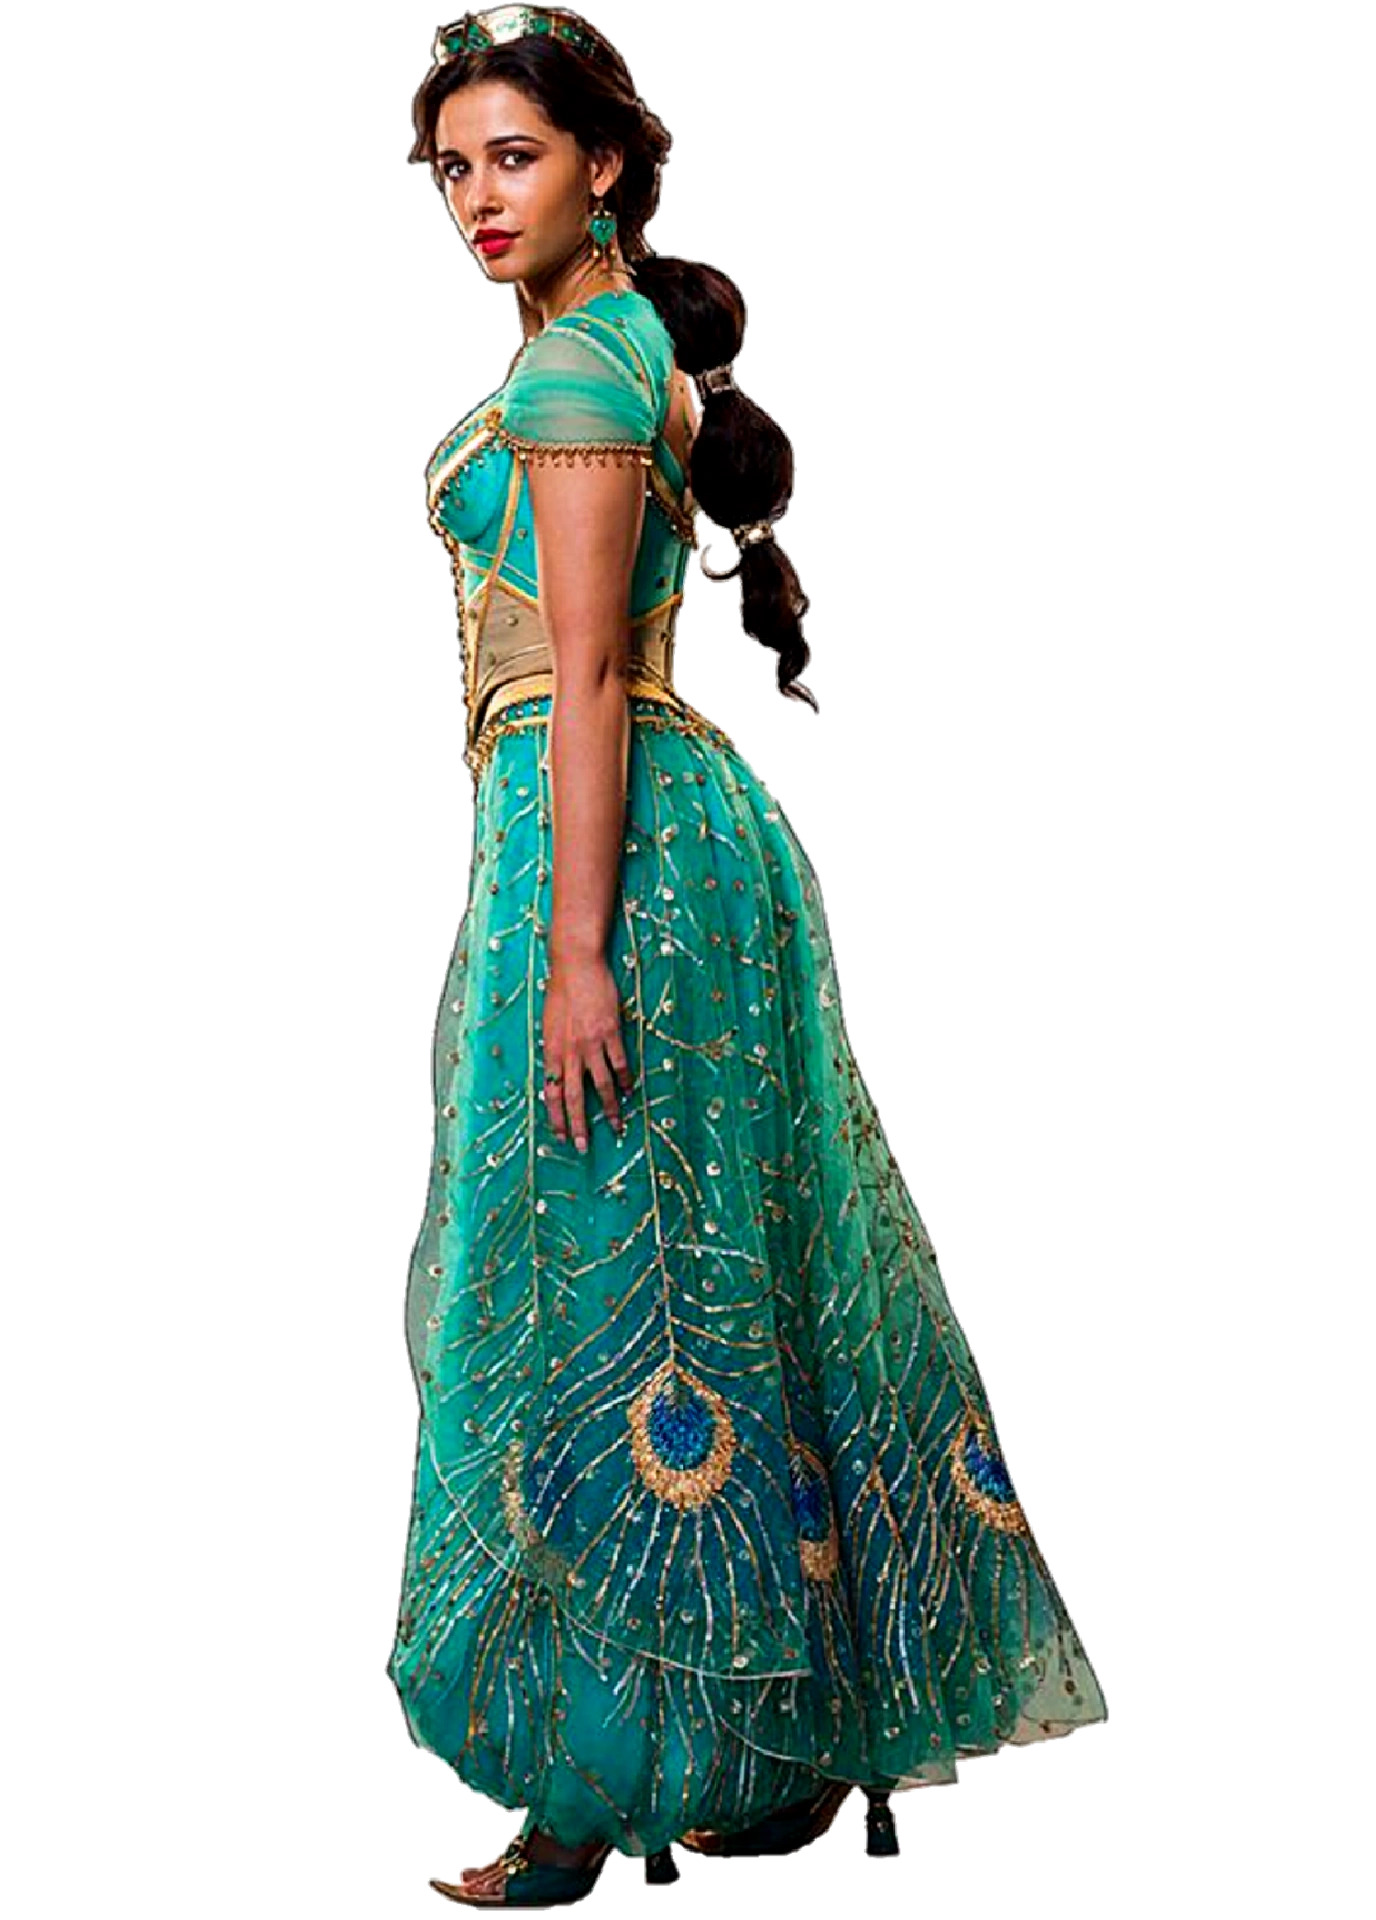 Jasmine (Disney), The princess Wikia